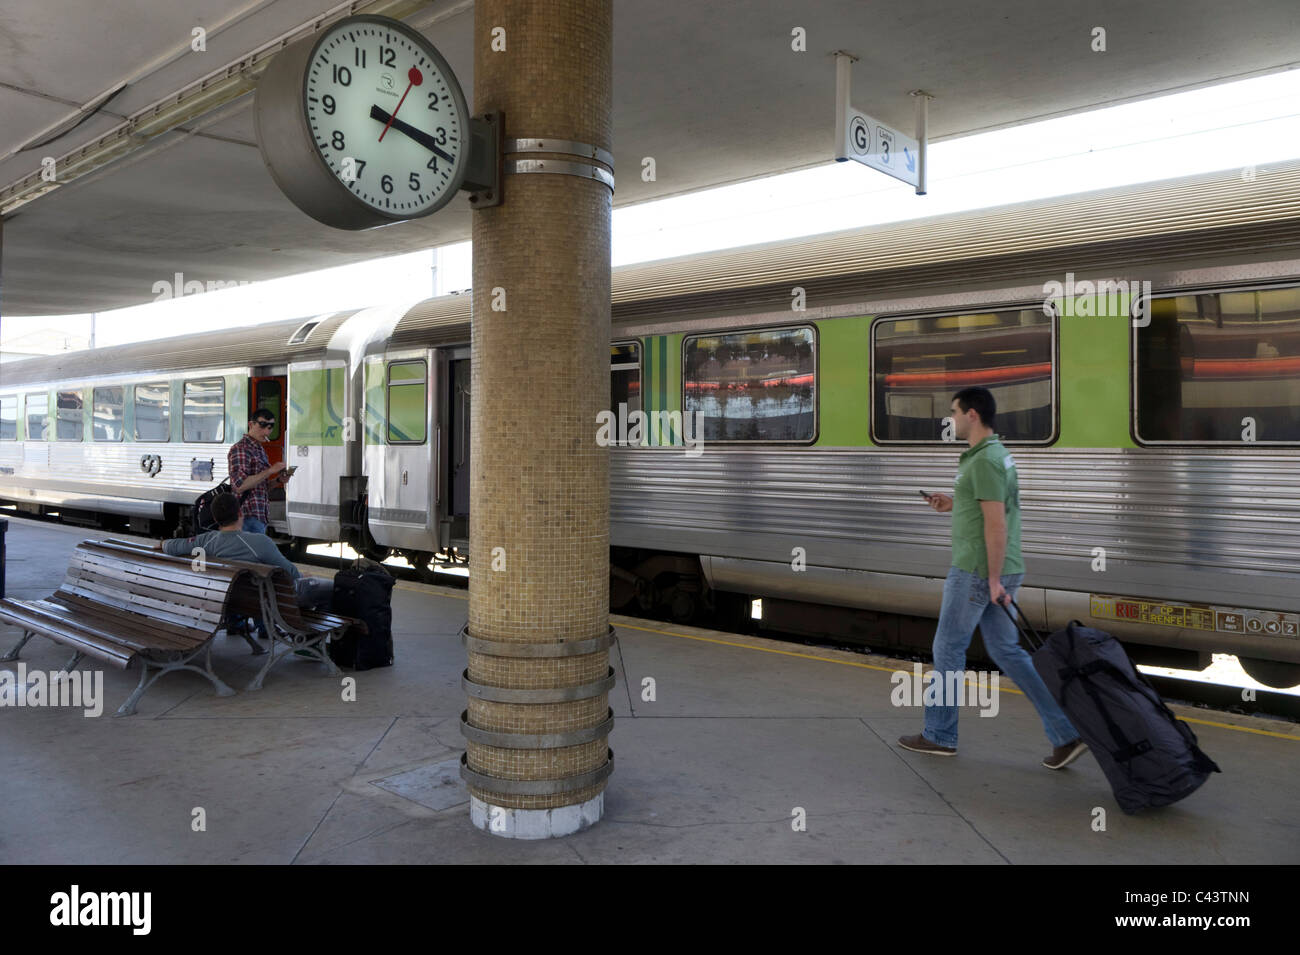 Menschen warten auf einen Zug in Santa Apolonia Bahnhof in Lissabon, Portugal, Europa Stockfoto